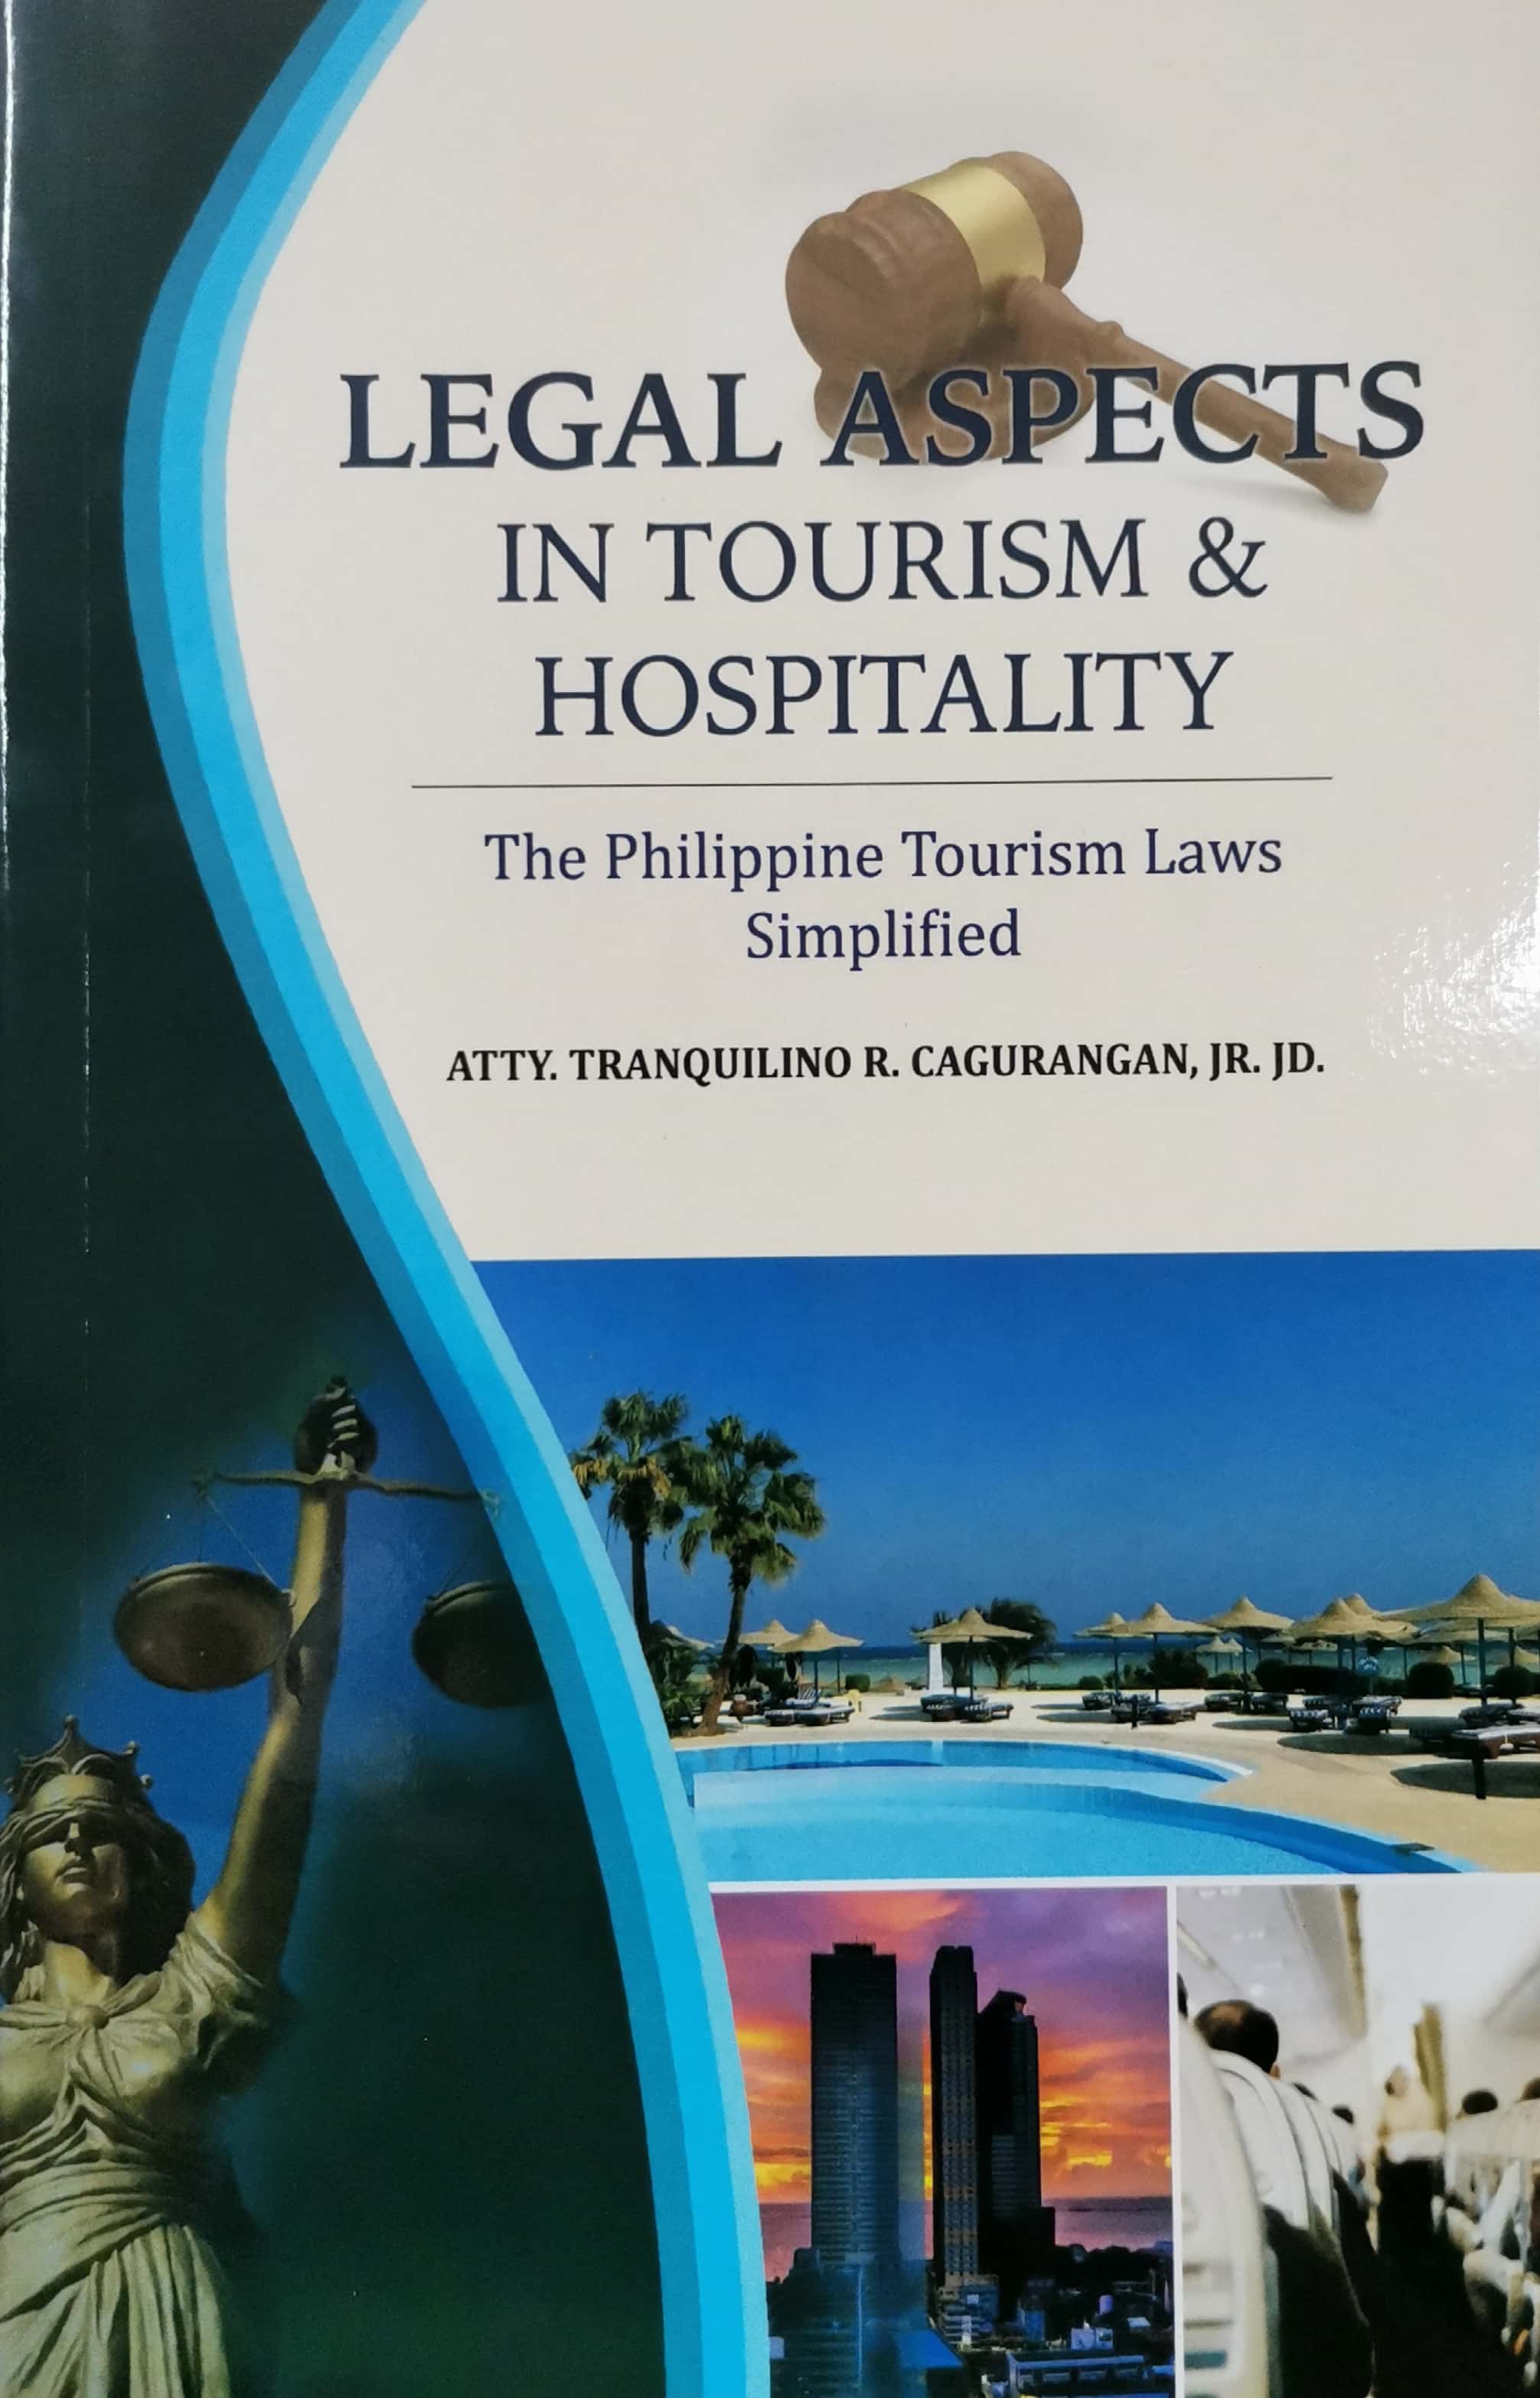 hospitality and tourism glossary